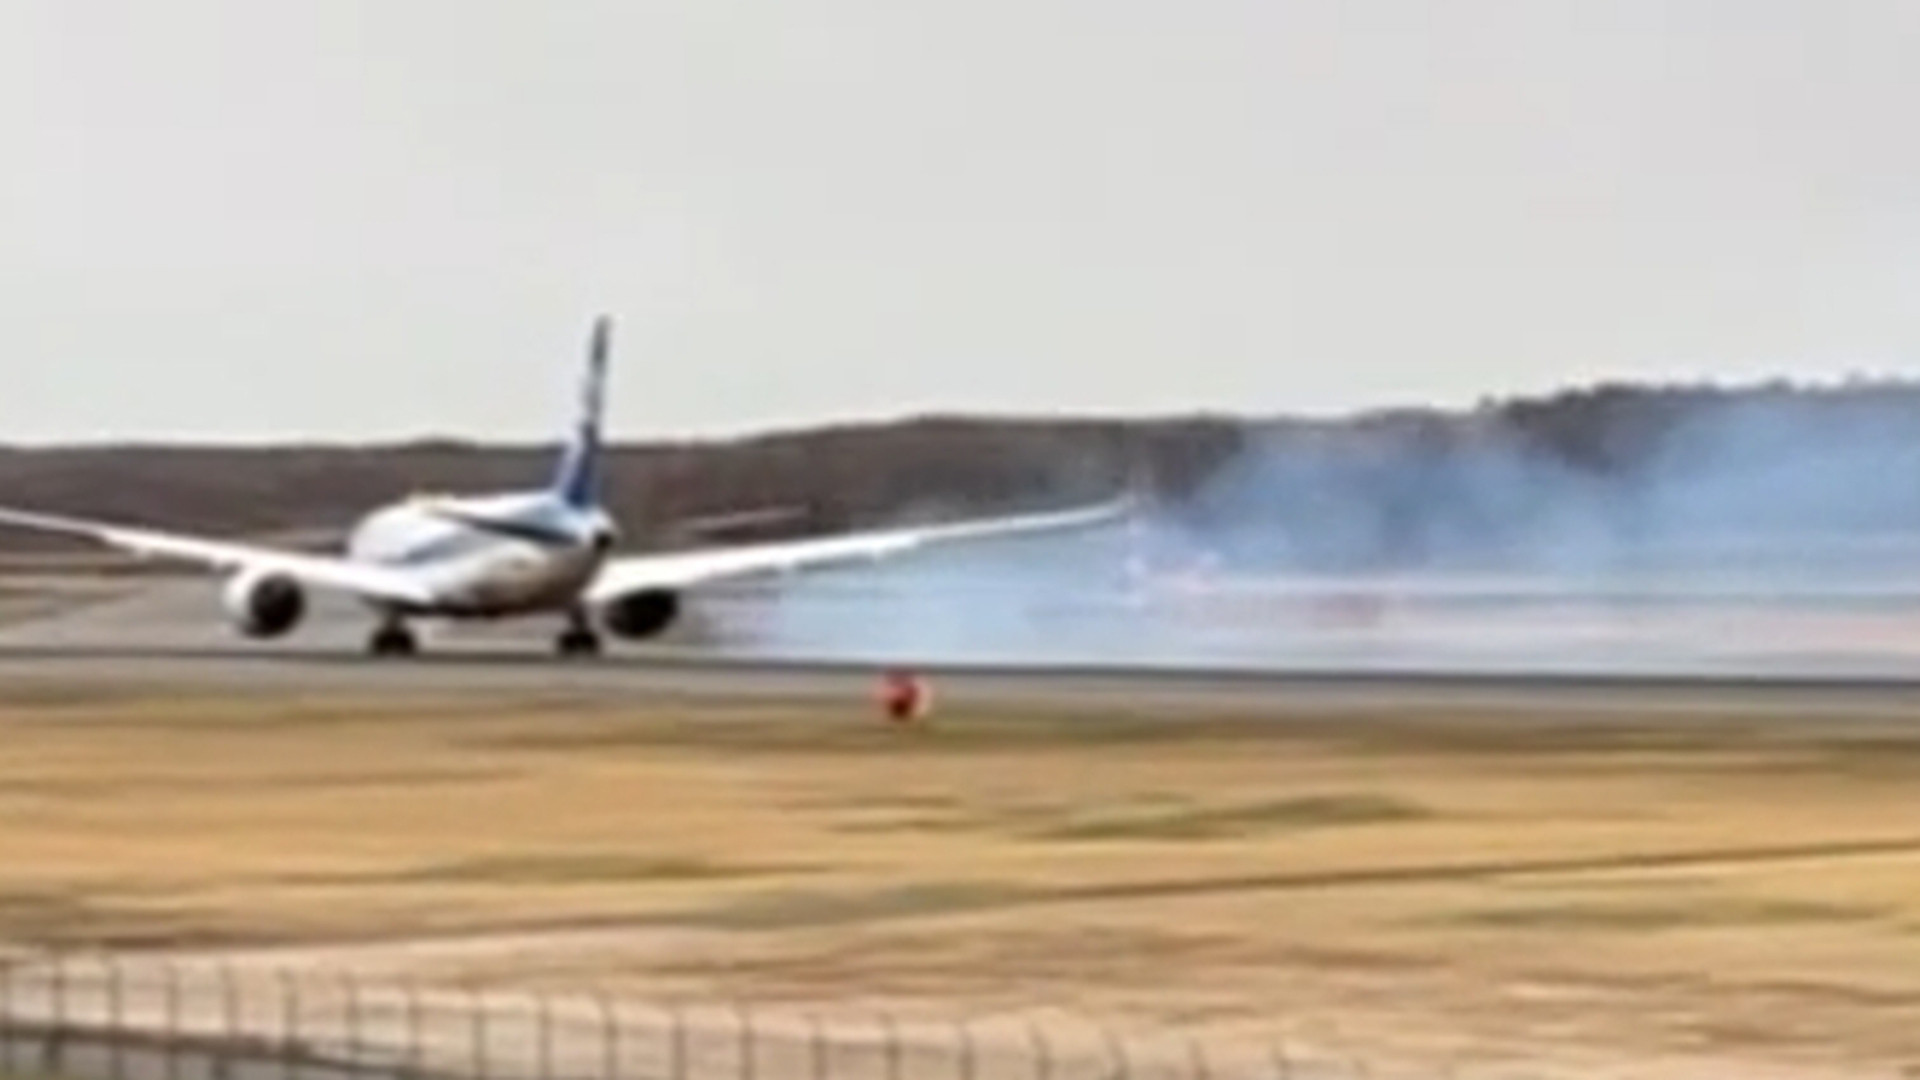 日本全日空波音客机北海道降落时机翼冒烟